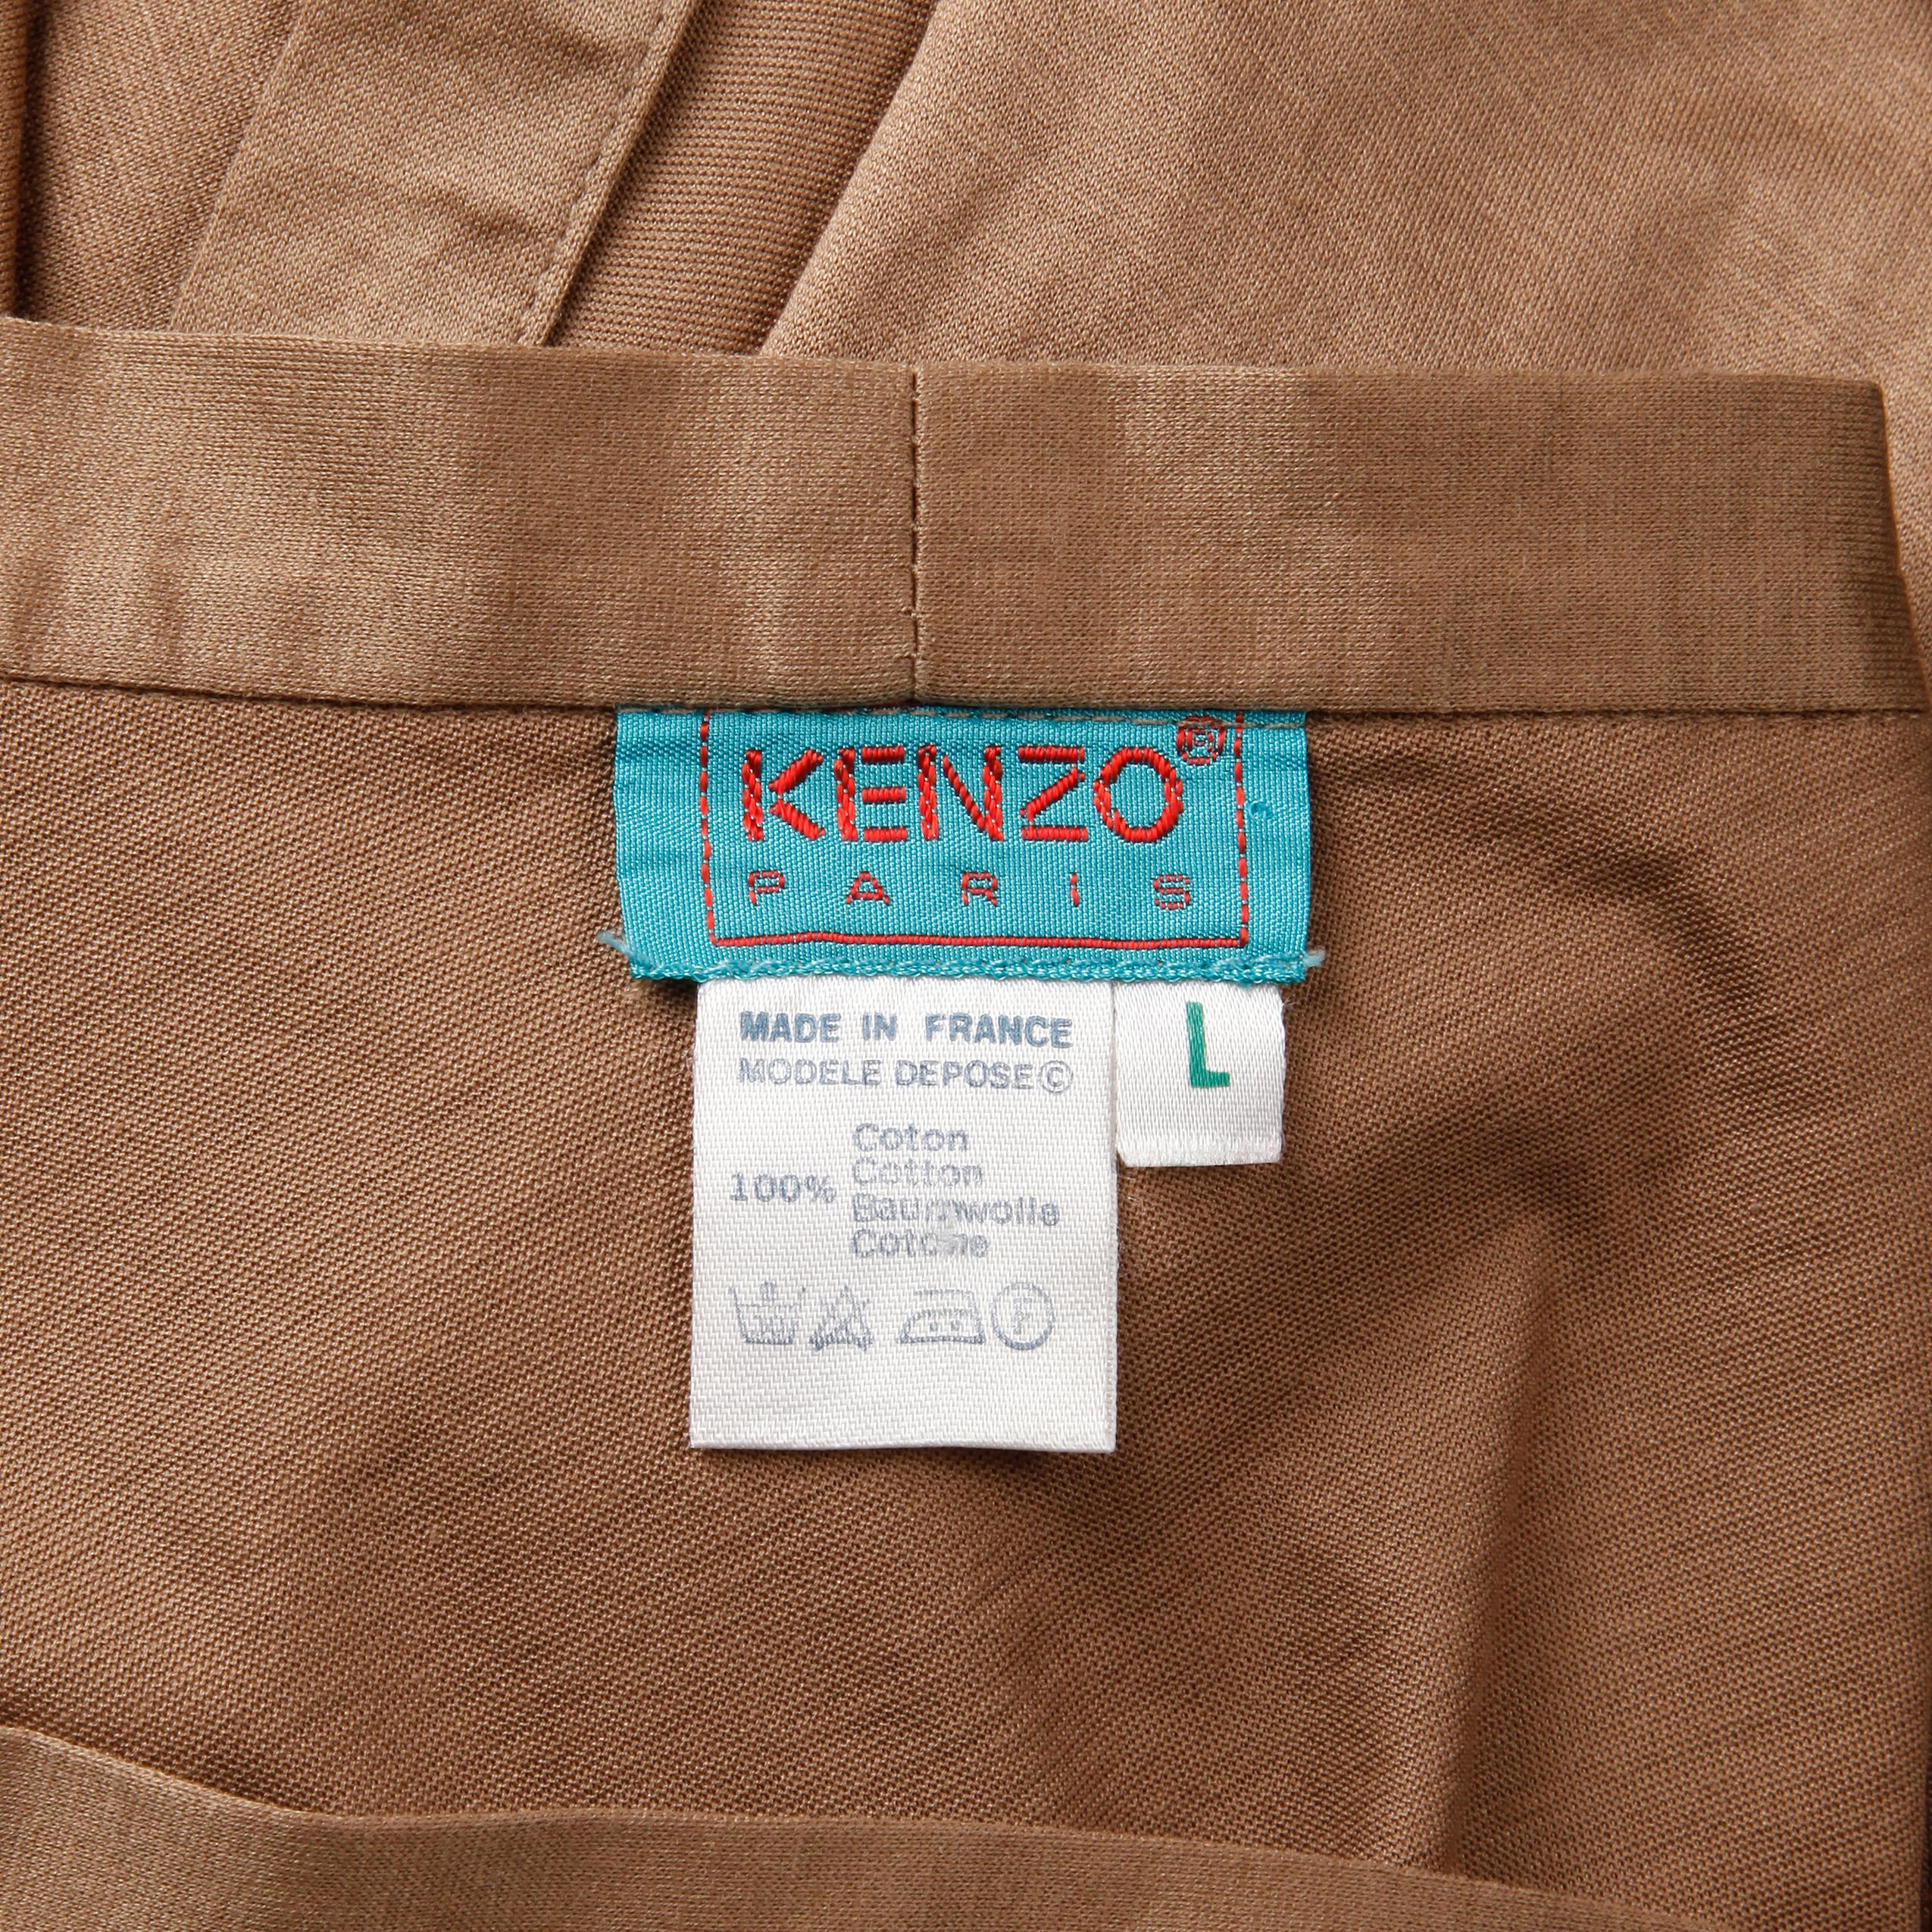 Jupe portefeuille polyvalente et légère en coton vintage taupe marron de Kenzo Paris. Non doublé, avec fermeture à l'aide d'un lien. La taille indiquée est Large. 100% coton. La taille indiquée est grande, mais la jupe peut également convenir à des